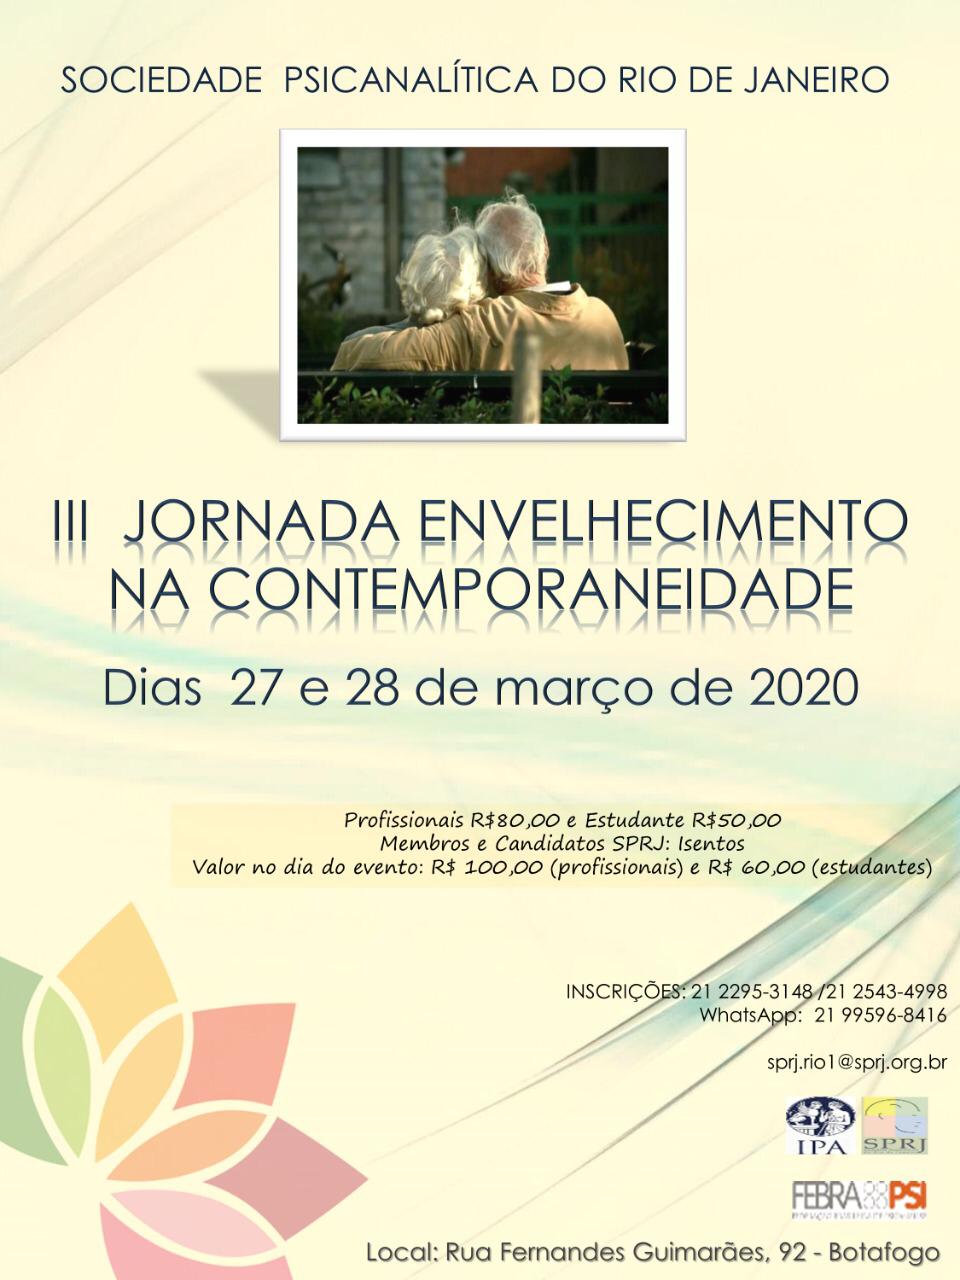 III Jornada Envelhecimento na Contemporaneidade @ SPRJ | Rio de Janeiro | Brasil